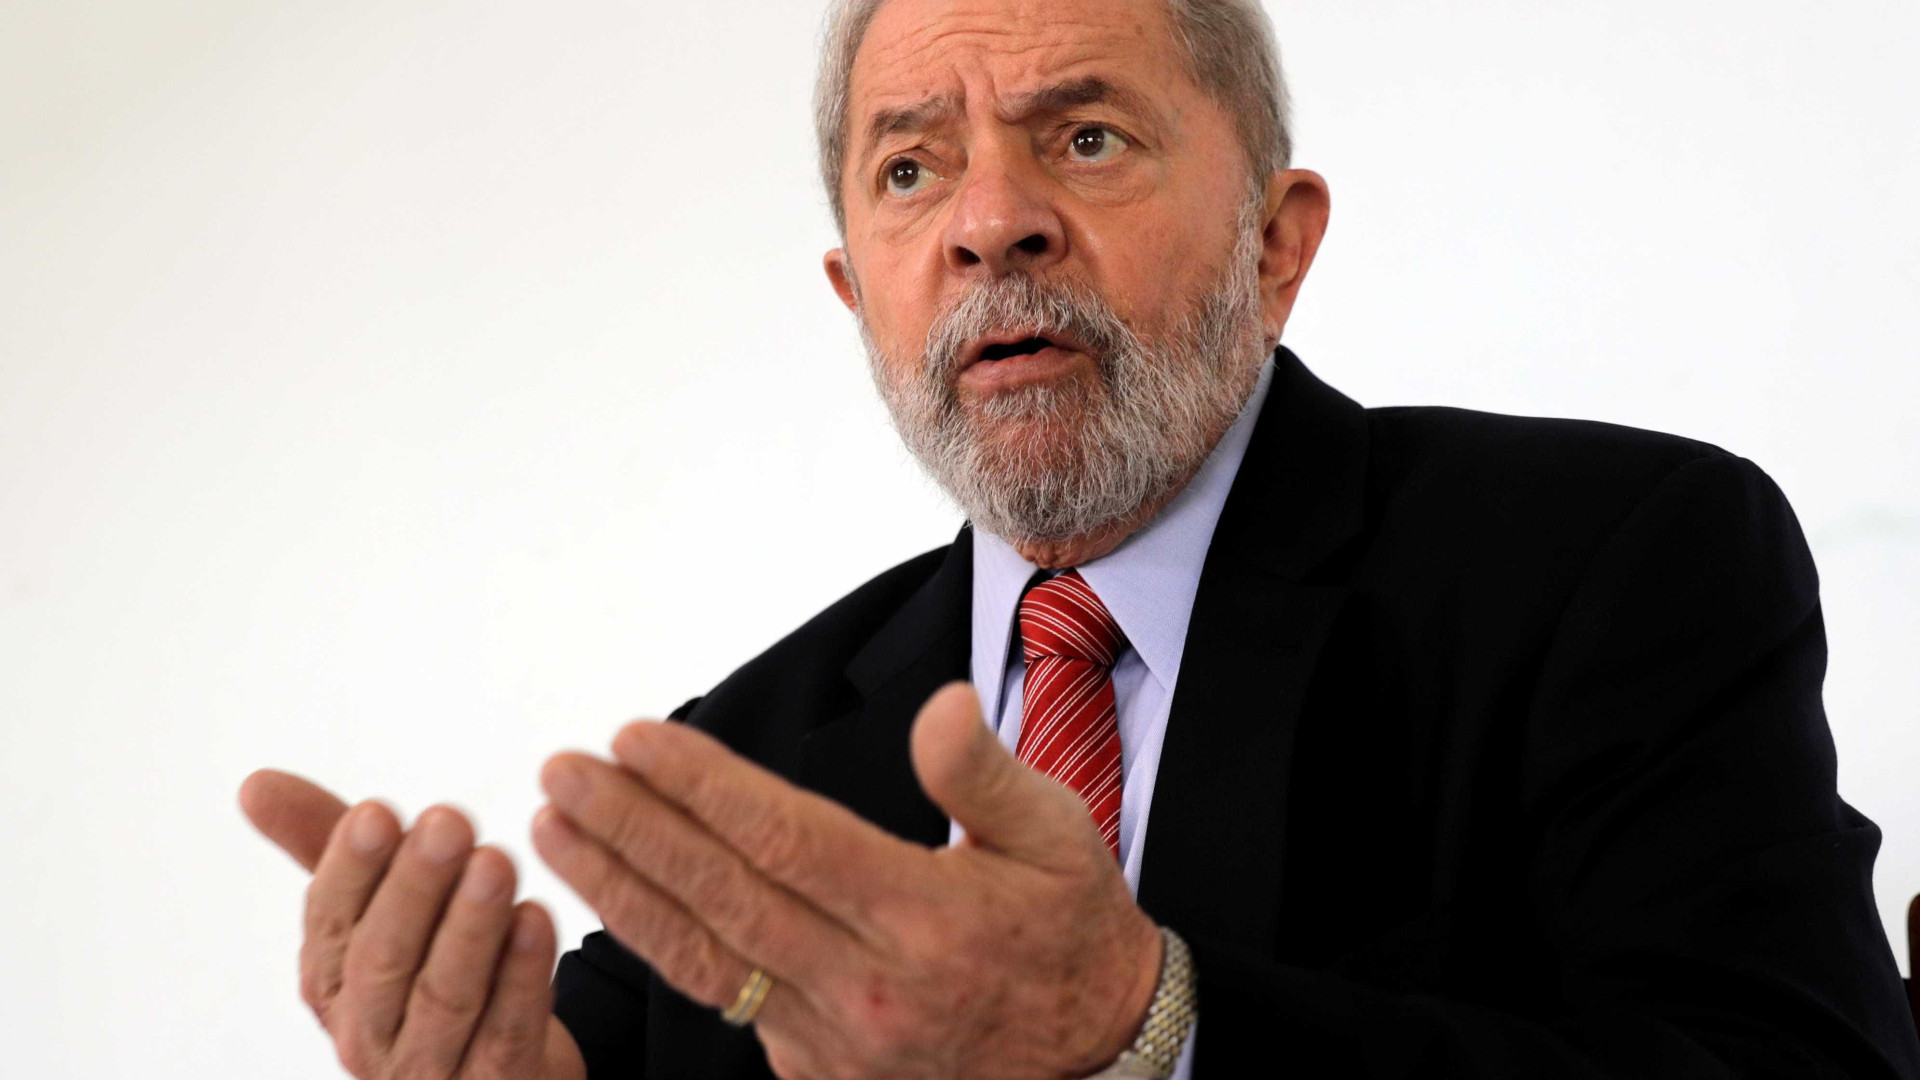 Marco Aurélio manda soltar presos após 2ª instância; decisão afeta Lula